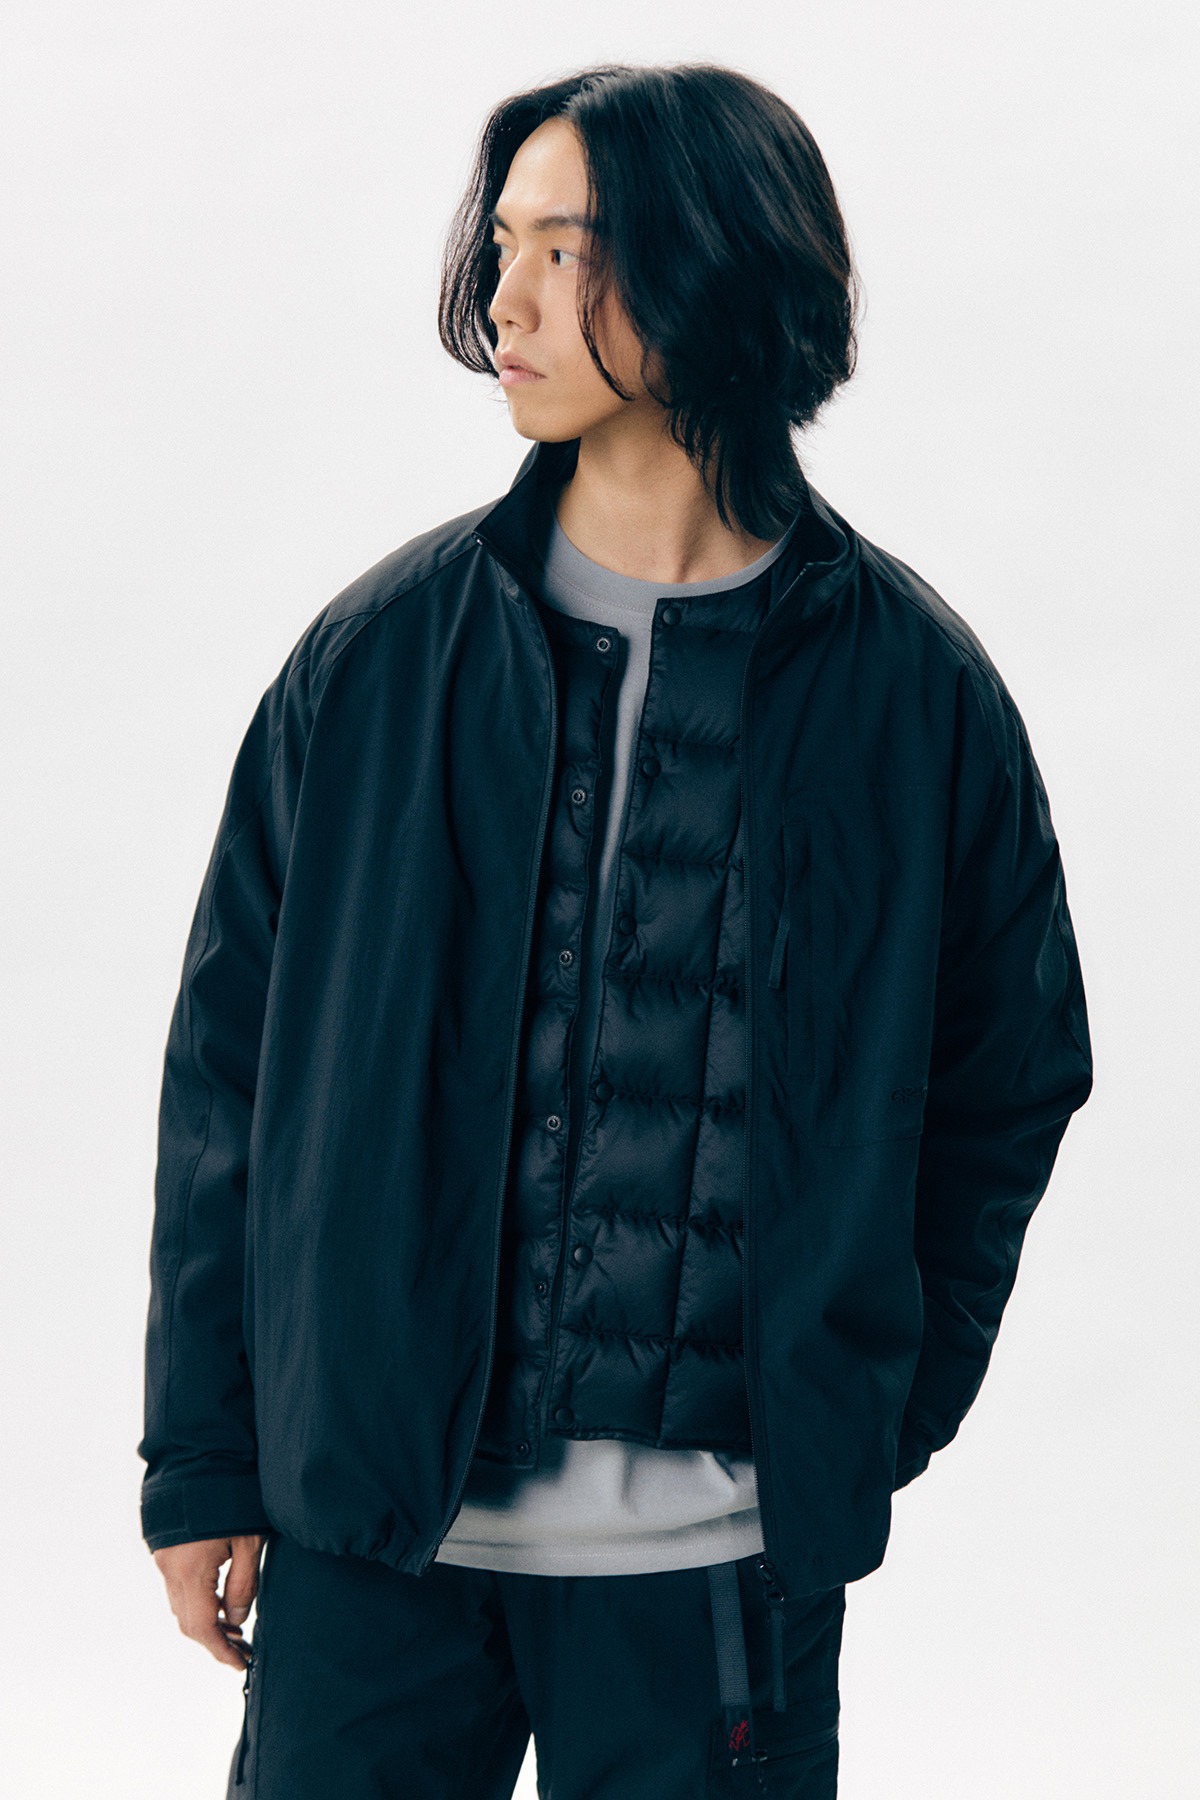 그라미치 소프트쉘 EQT 재킷 블랙